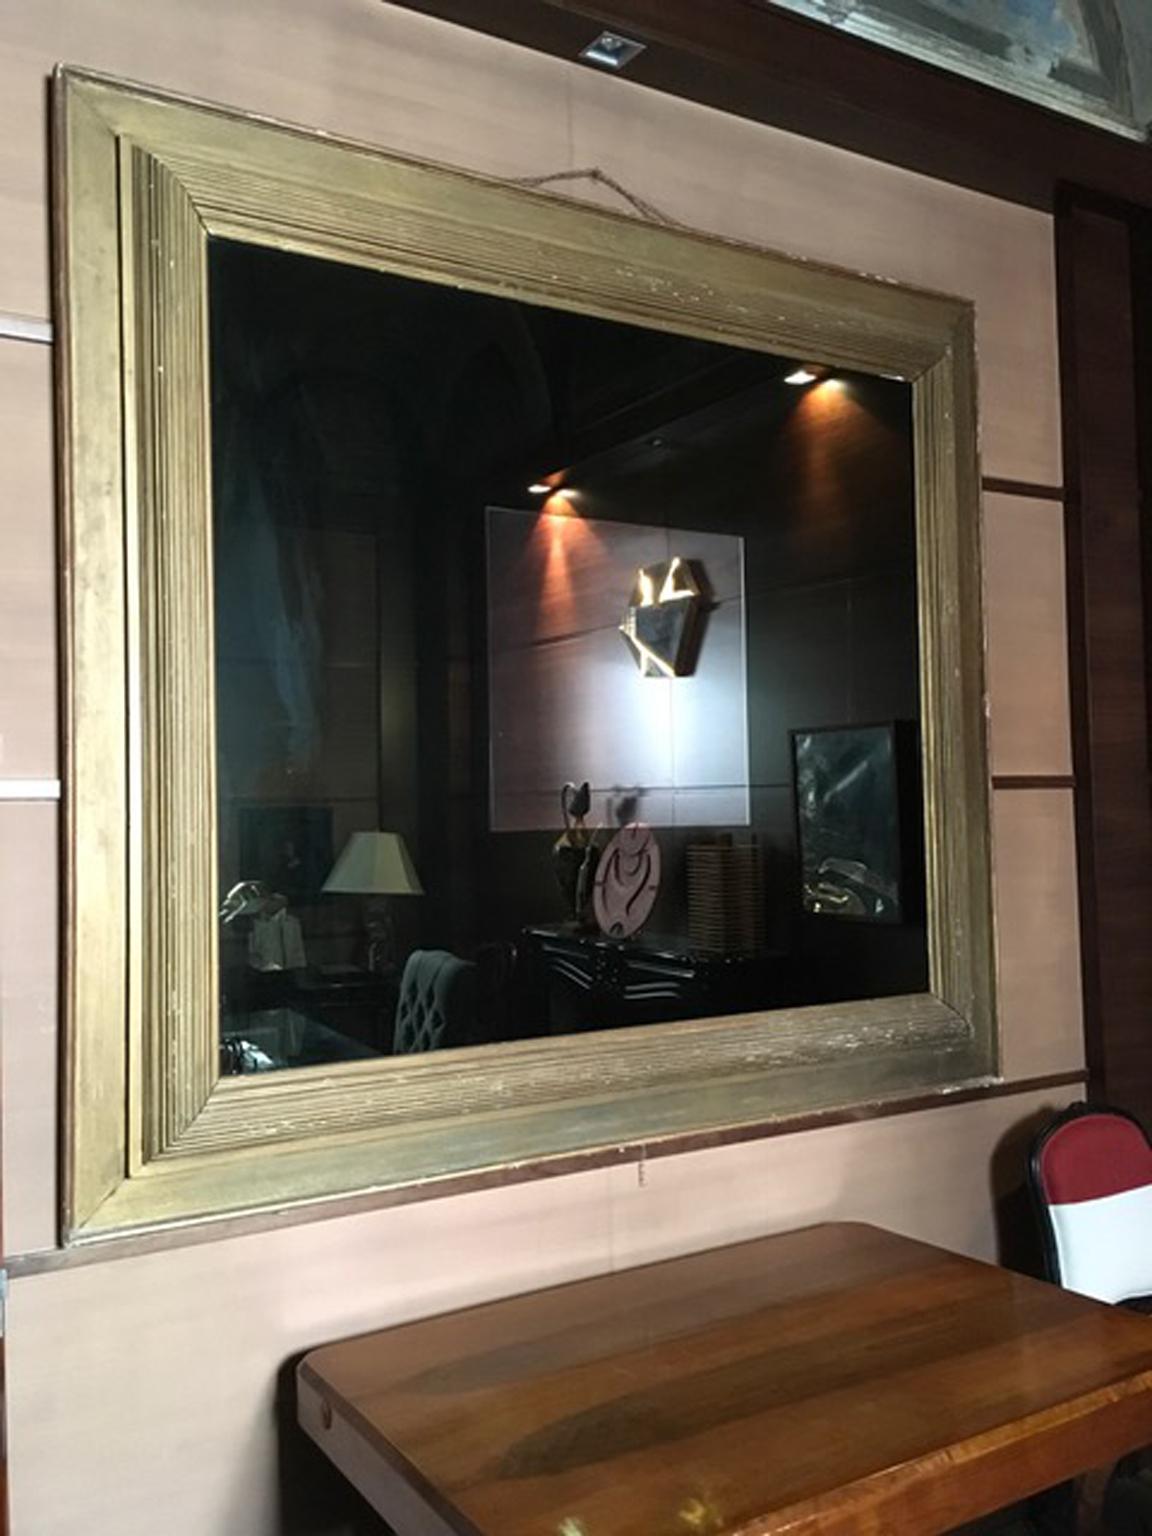 Ce superbe miroir post-moderne a un cadre en bois doré daté d'environ 1960. Le miroir fumé géant comporte un carré de miroir transparent au centre. Le résultat est une pièce unique en son genre dans le style postmoderne italien.

Le cadre en bois